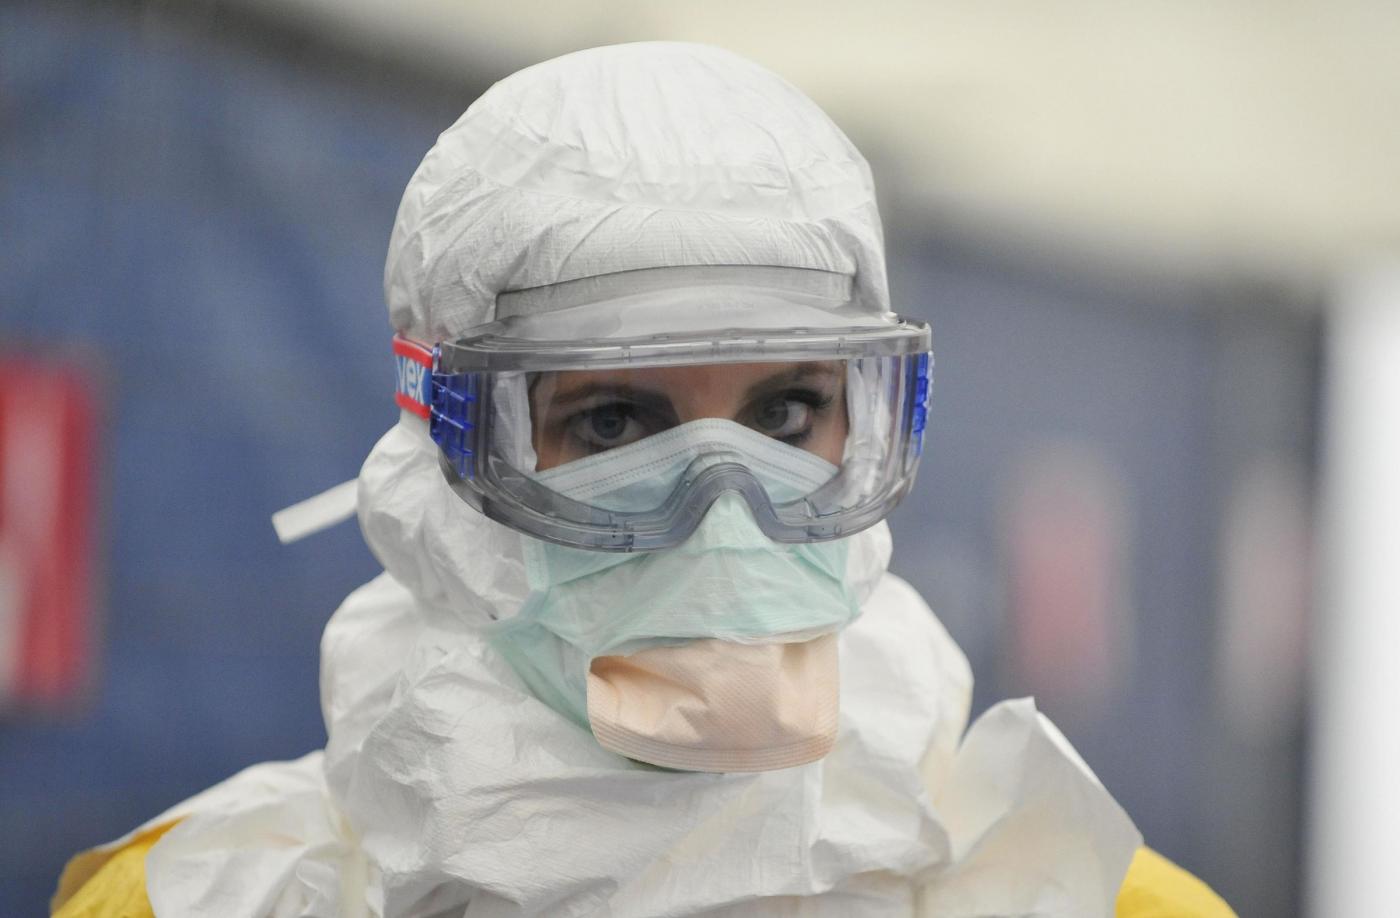 Emergenza Ebola: volo umanitario del Wfp partito da Brindisi per la Guinea